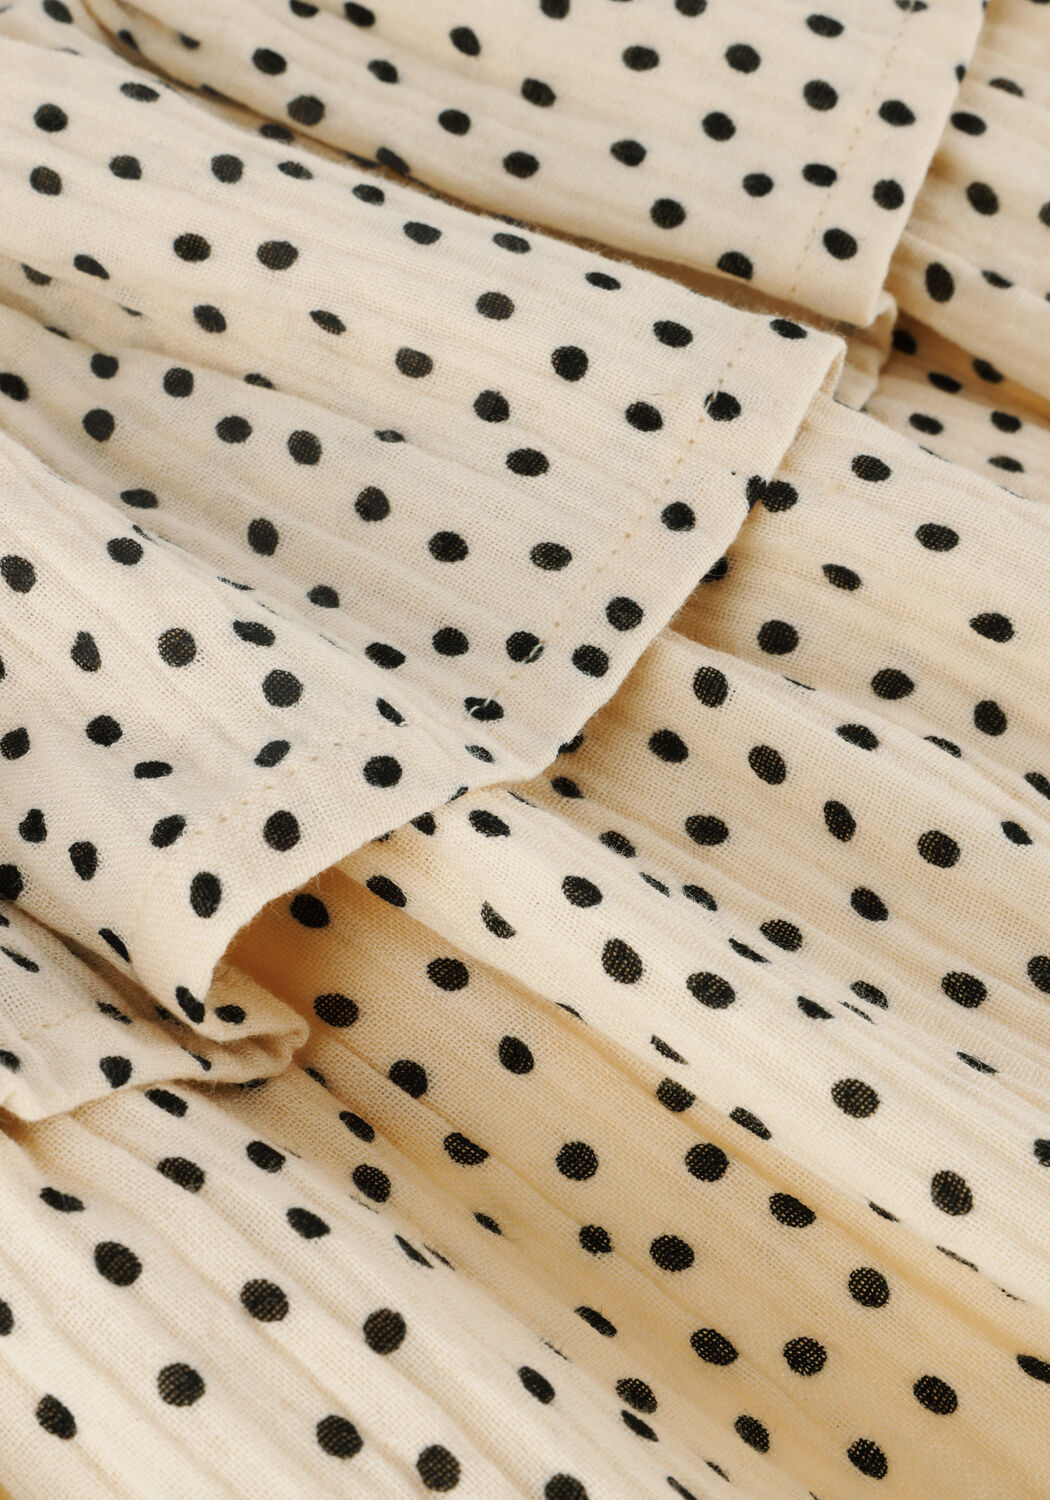 CARLIJNQ Meisjes Rokken Mini Dots Layered Skirt Wit